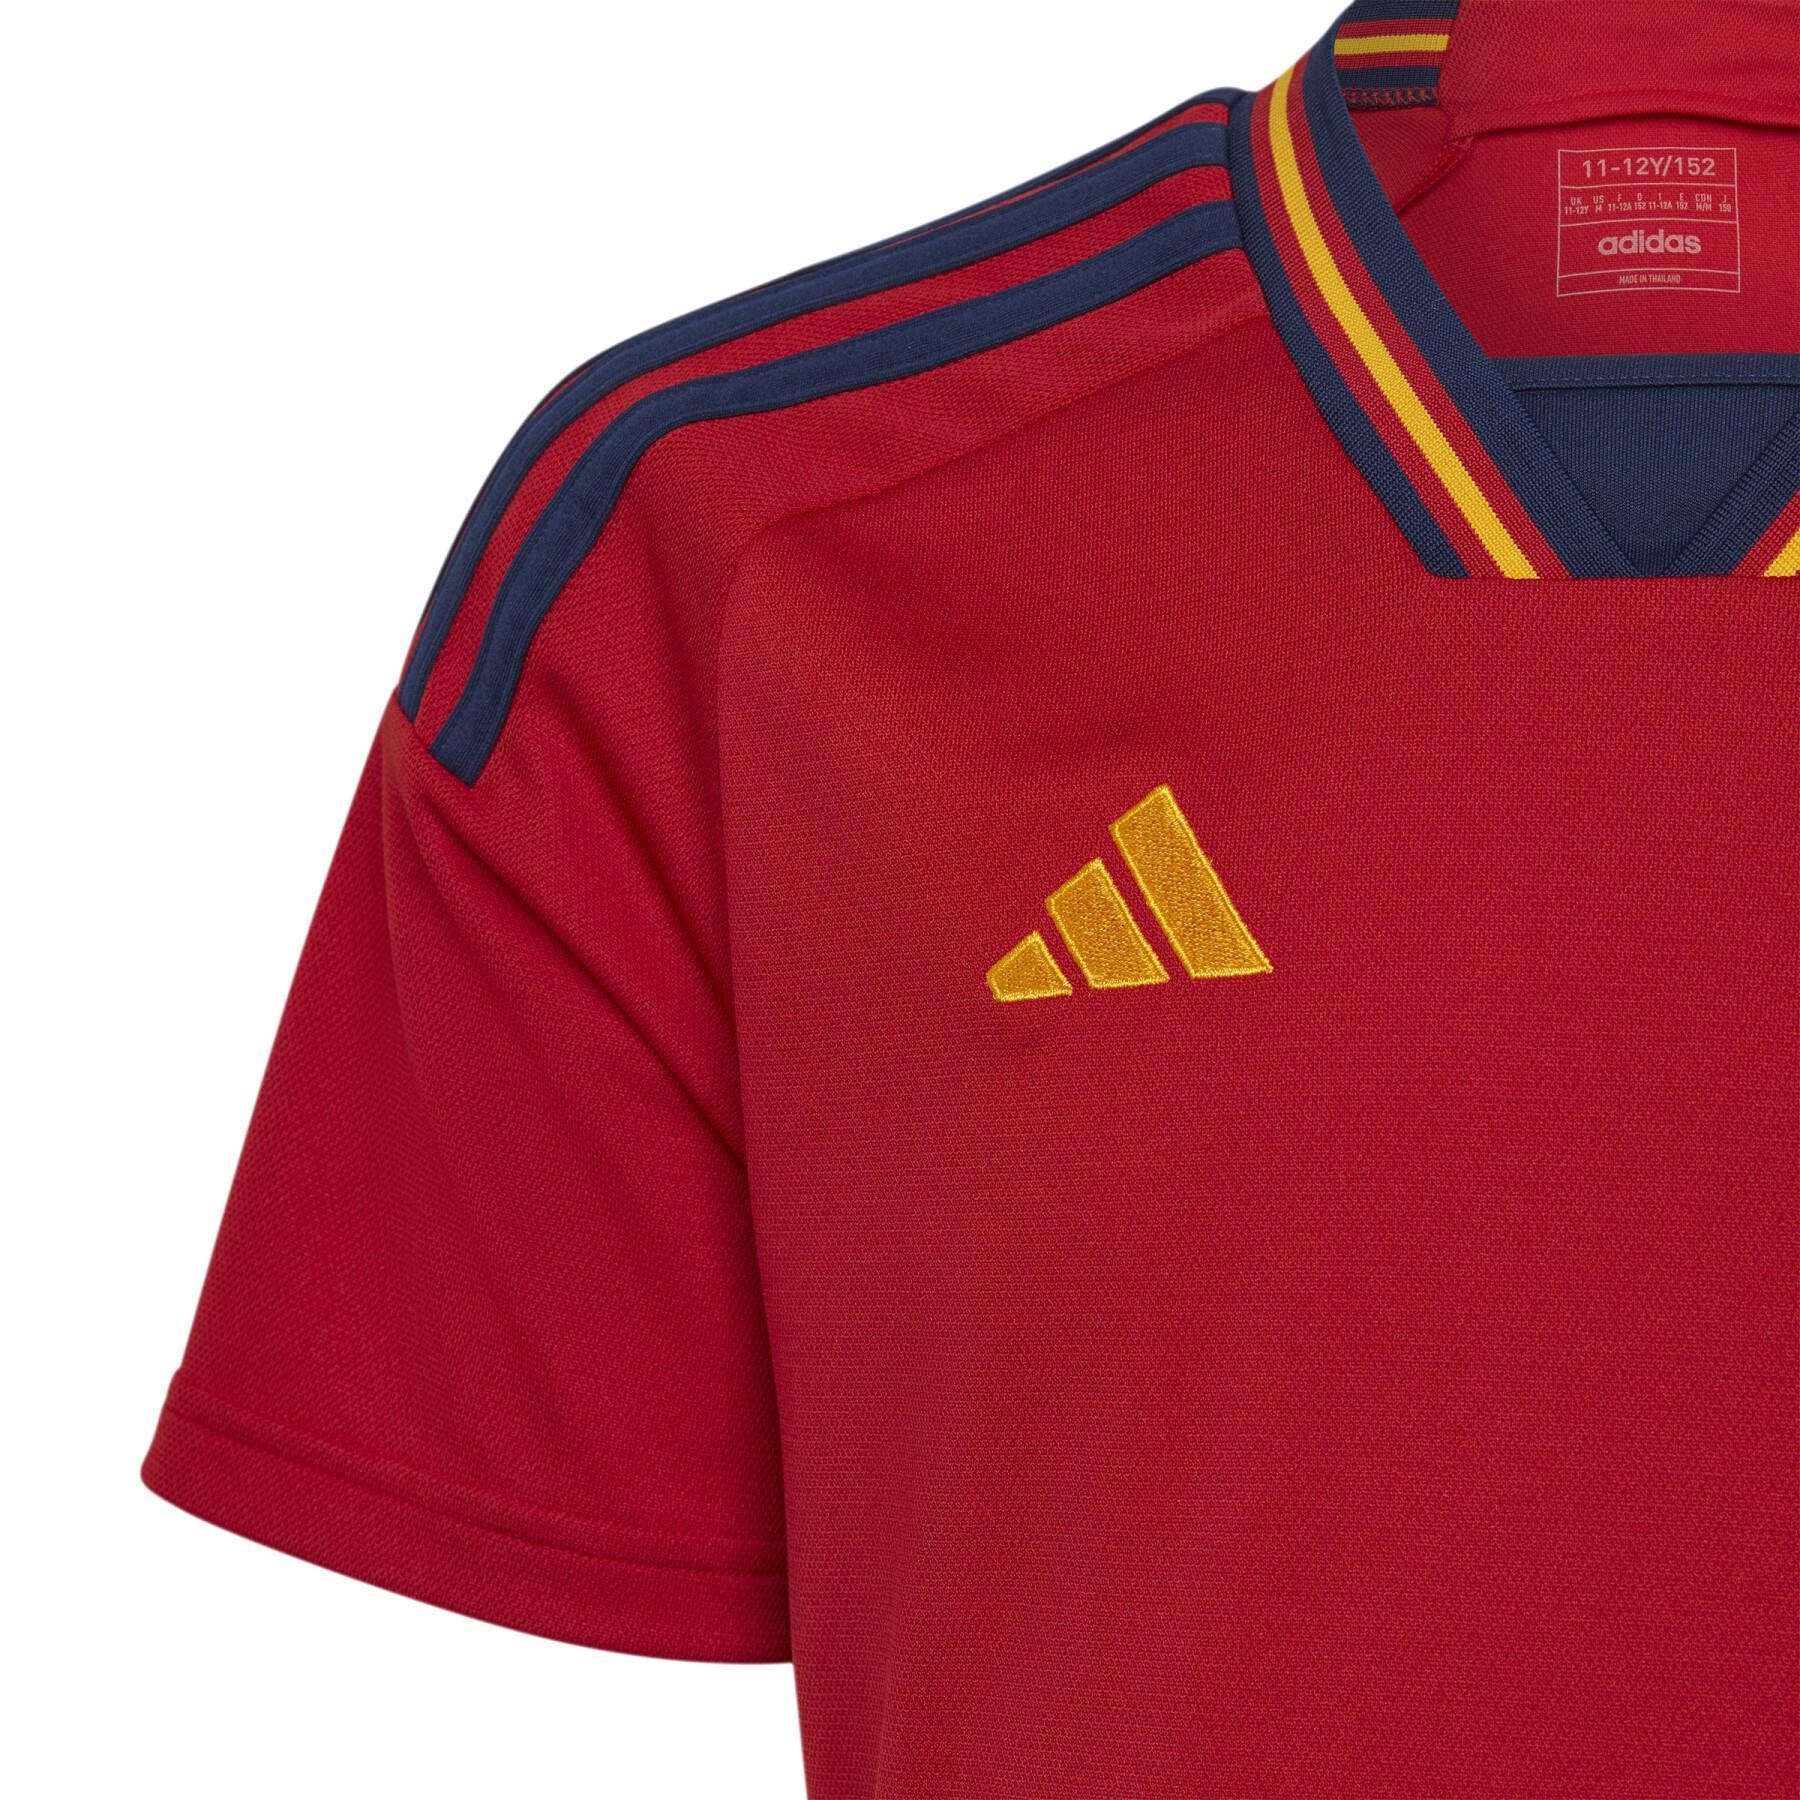 Camiseta primera equipación infantil Espagne 2022/23